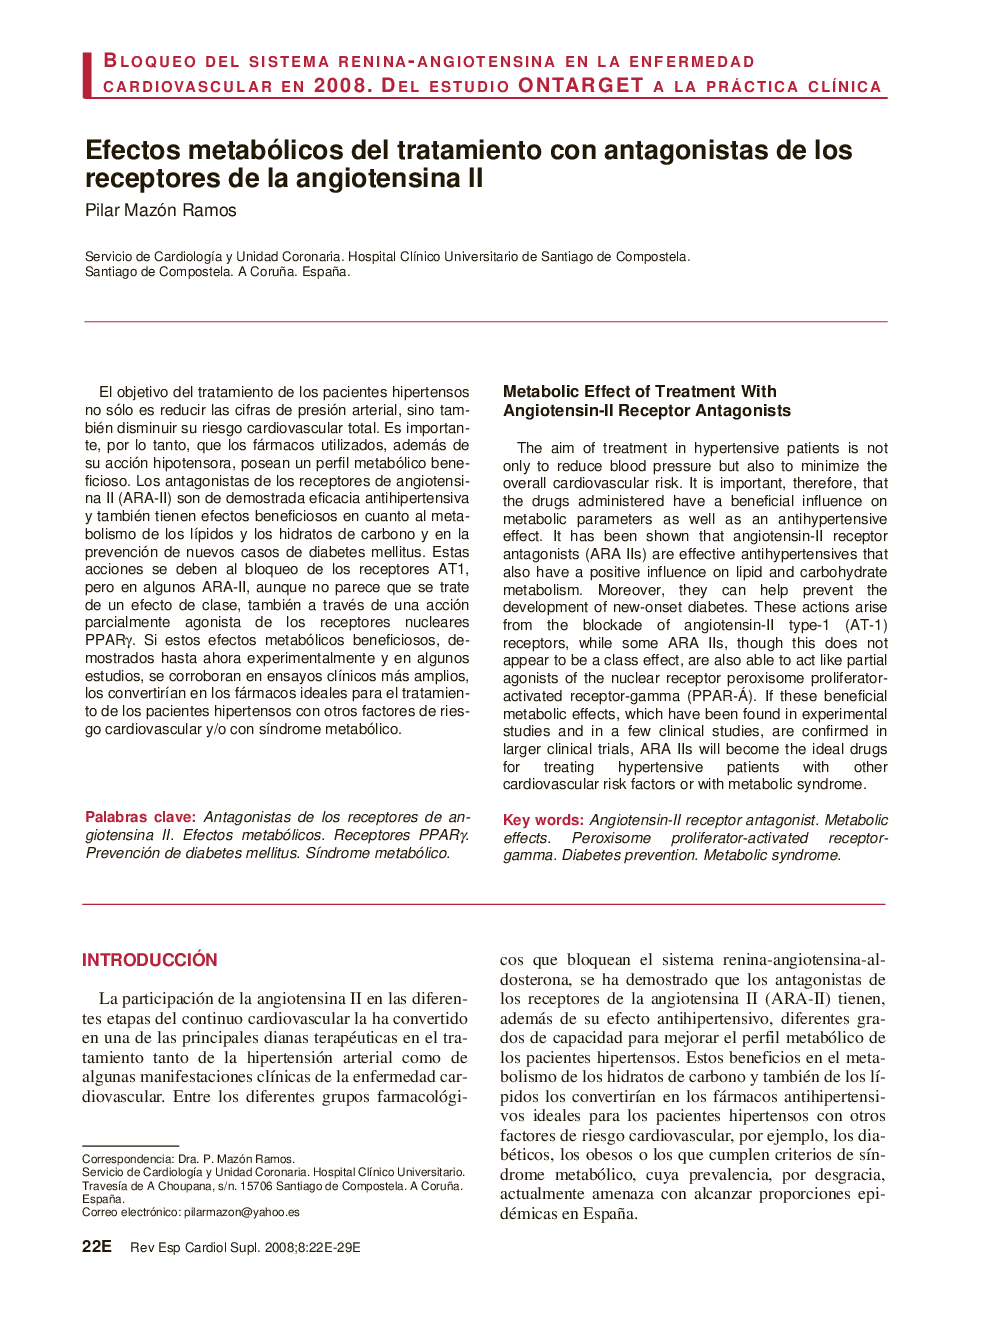 Efectos metabólicos del tratamiento con antagonistas de los receptores de la angiotensina II